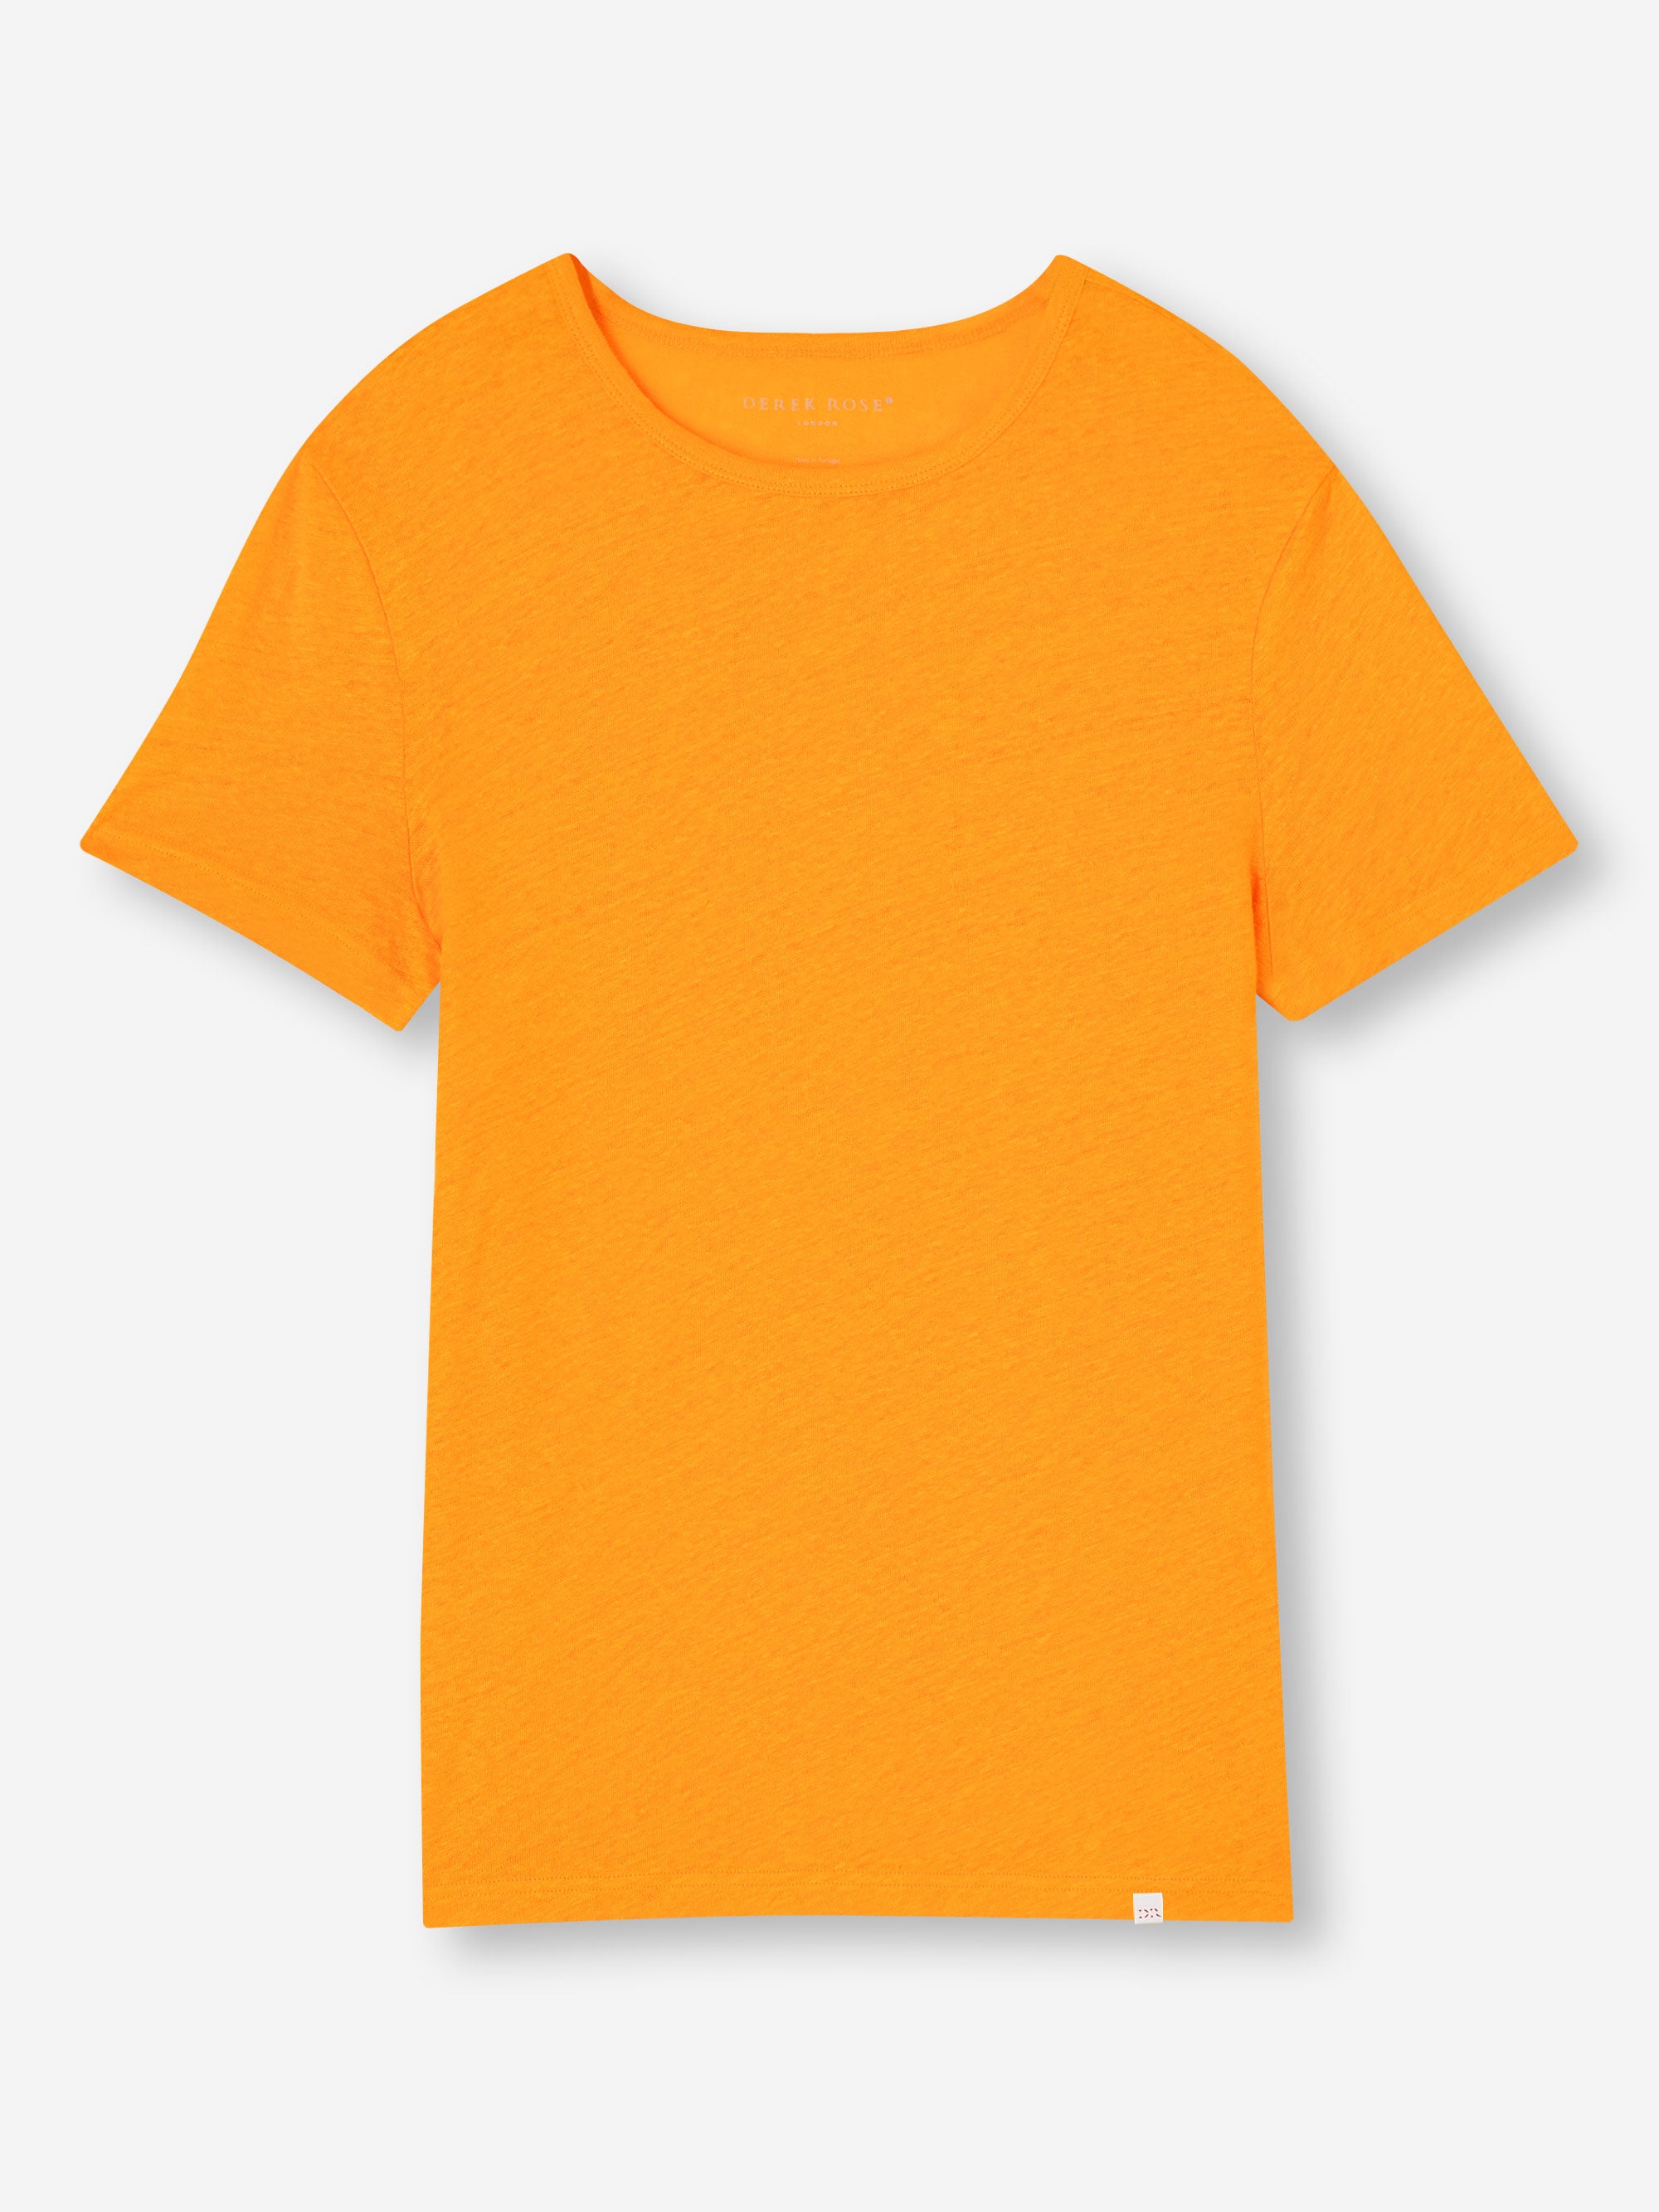 Men's T-Shirt Jordan Linen Tangerine